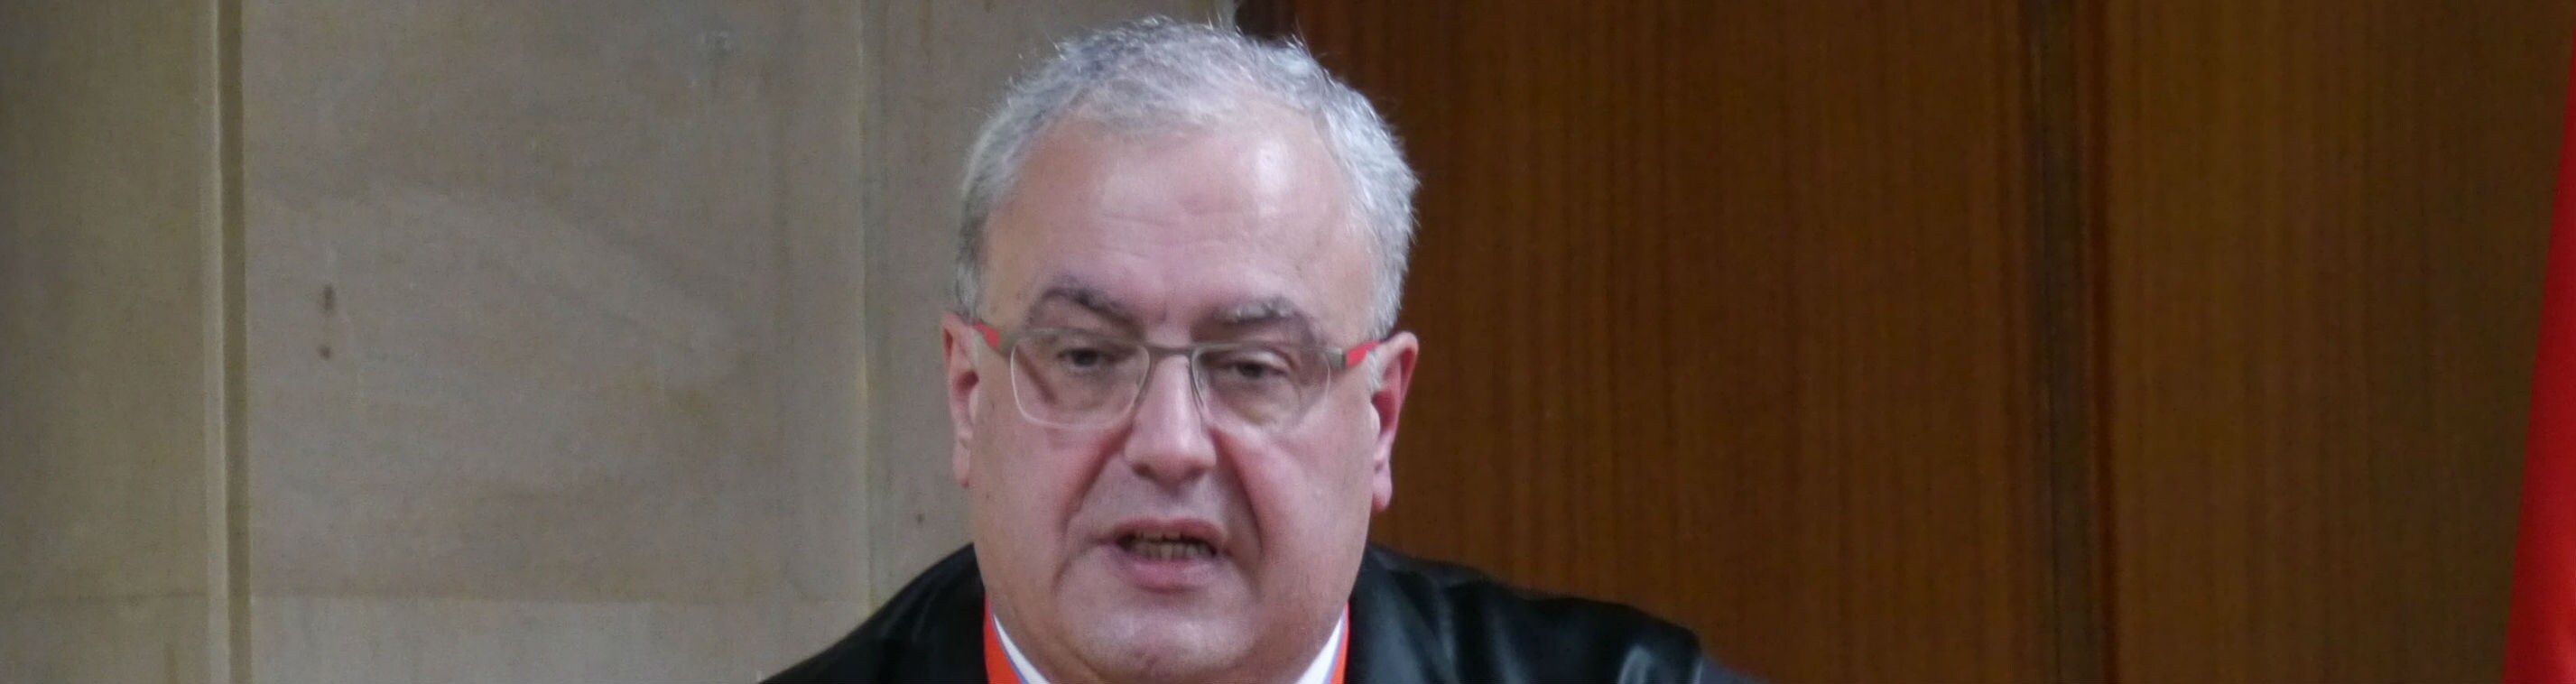 Rafael Morales Morales Ortega, nuevo presidente de la Audiencia Provincial de Jaén